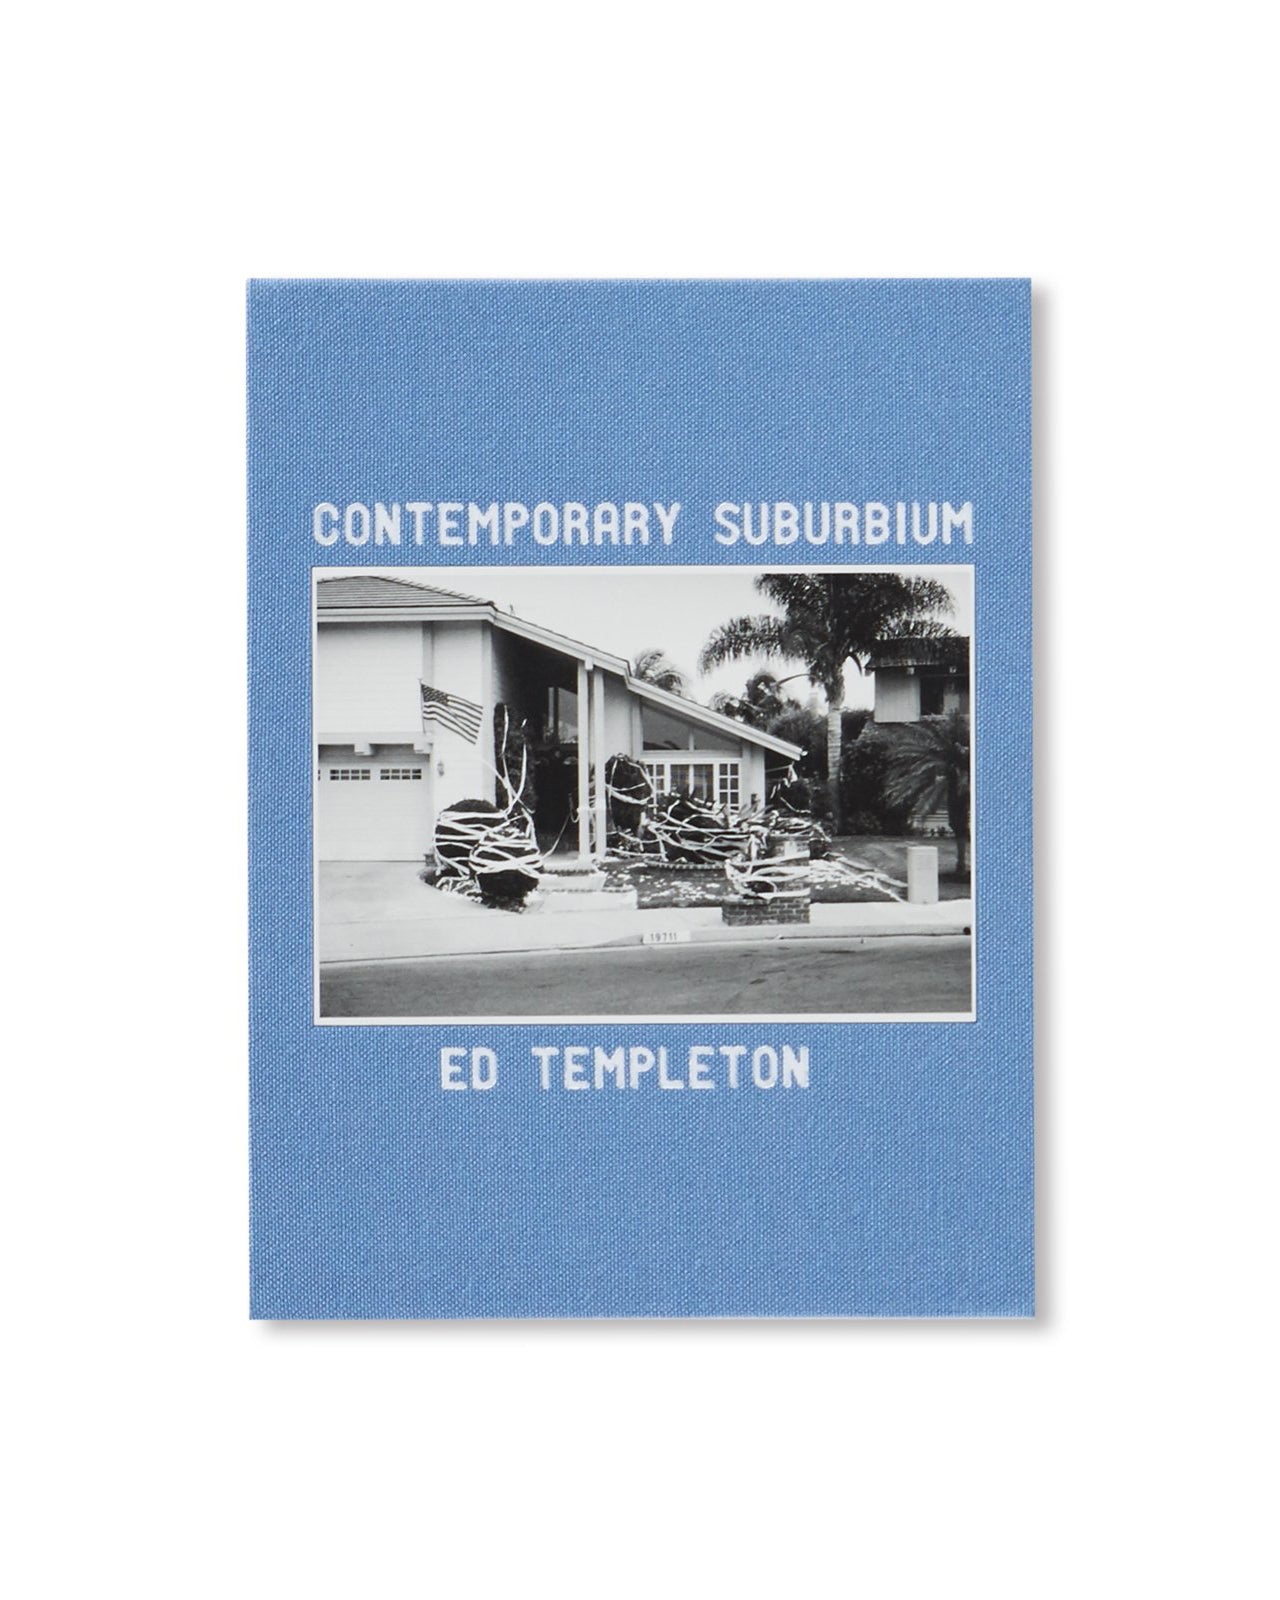 【ED & DEANNA TEMPLETON】CONTEMPORARY SUBURBIUM